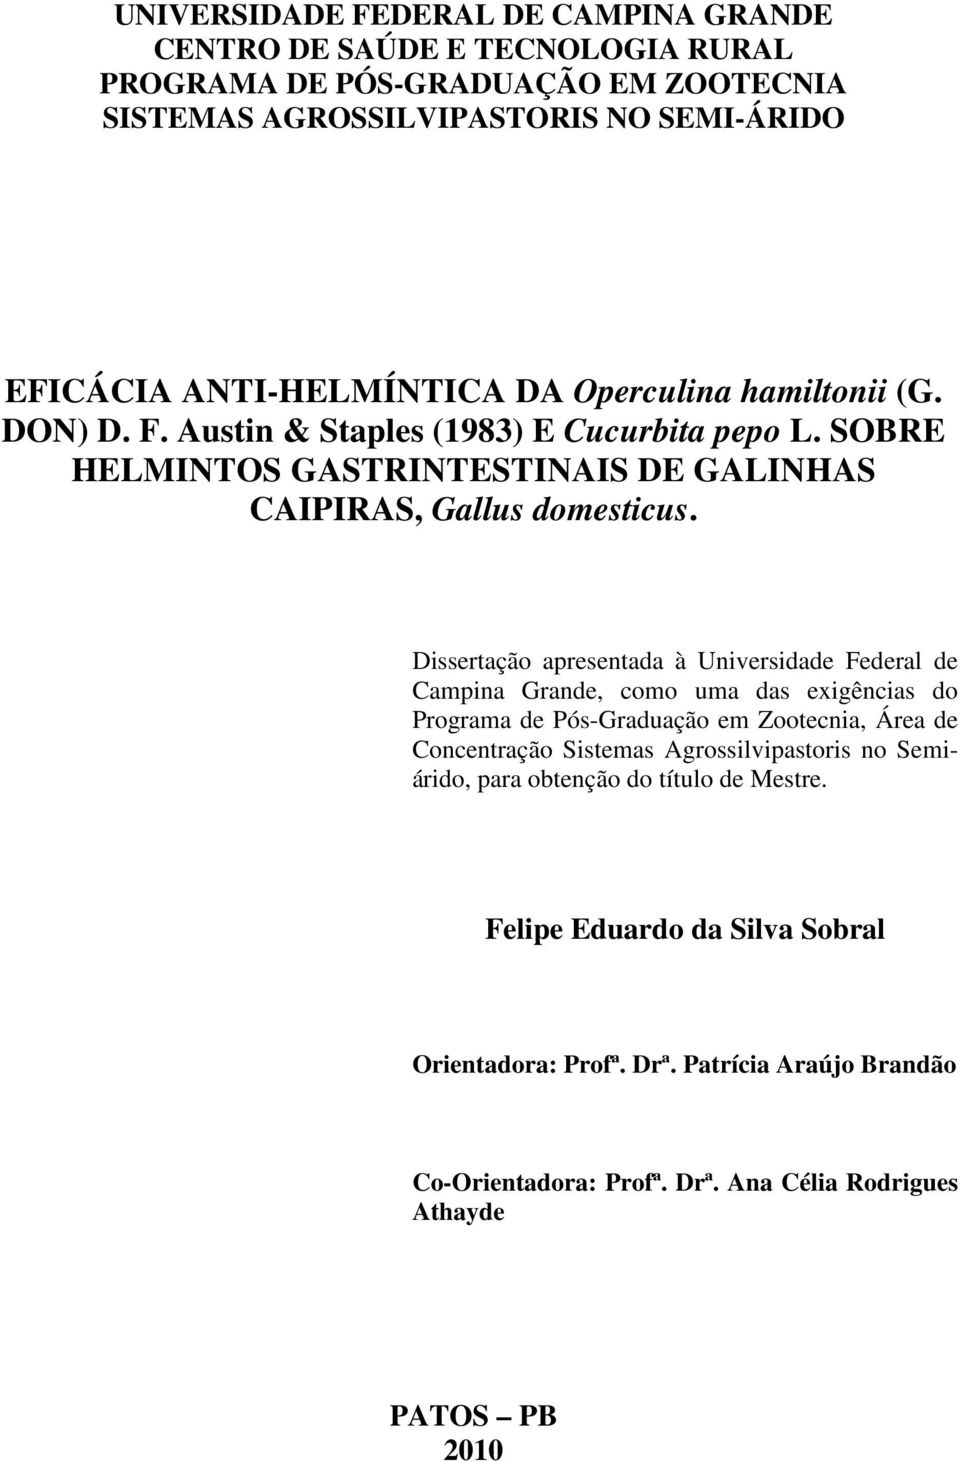 Dissertação apresentada à Universidade Federal de Campina Grande, como uma das exigências do Programa de Pós-Graduação em Zootecnia, Área de Concentração Sistemas